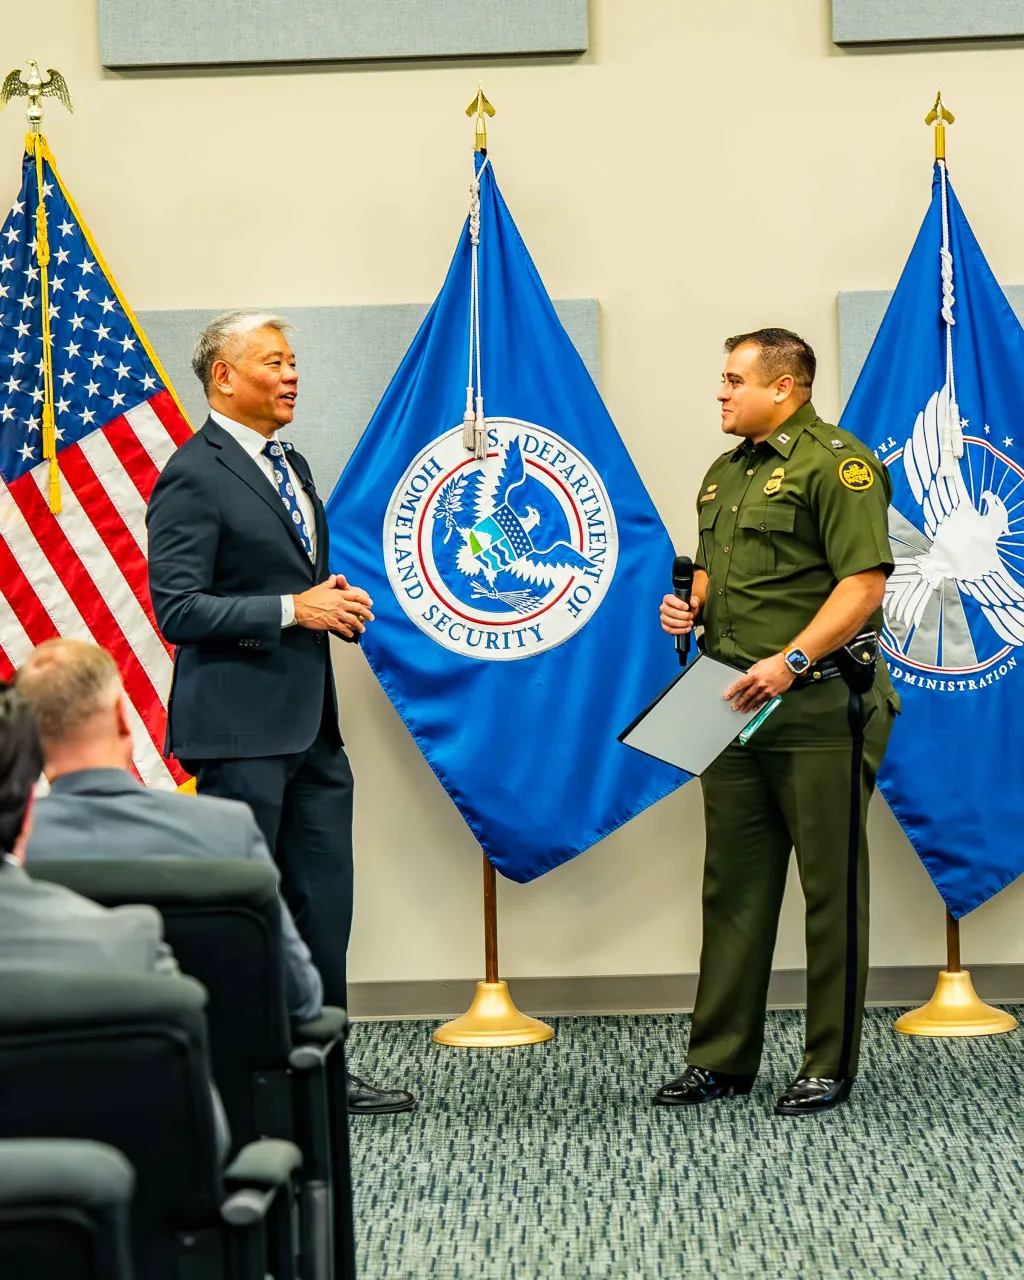 Image: DHS Deputy Secretary John Tien Hosts the Secretary’s Awards at Joint Base San Antonio, Texas  (009)